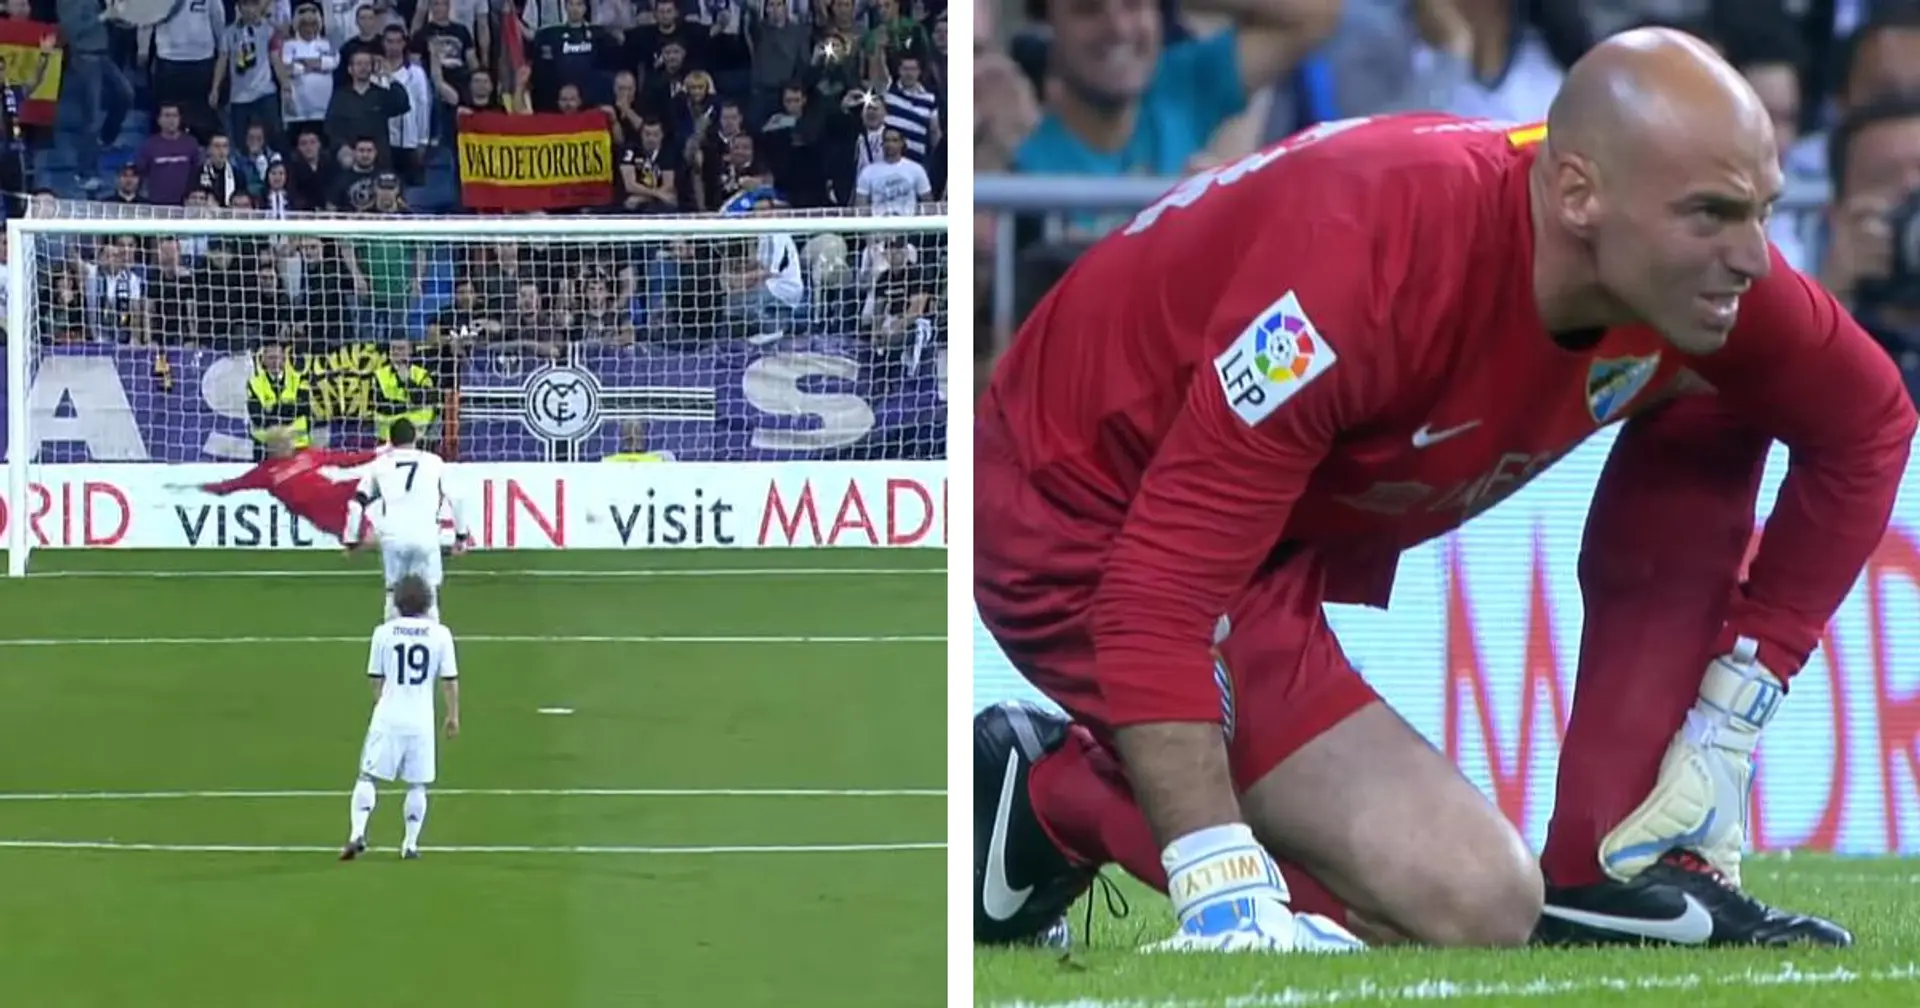 Comment Cristiano Ronaldo a blessé le gardien de but avec son penalty dans un match fou (vidéo)